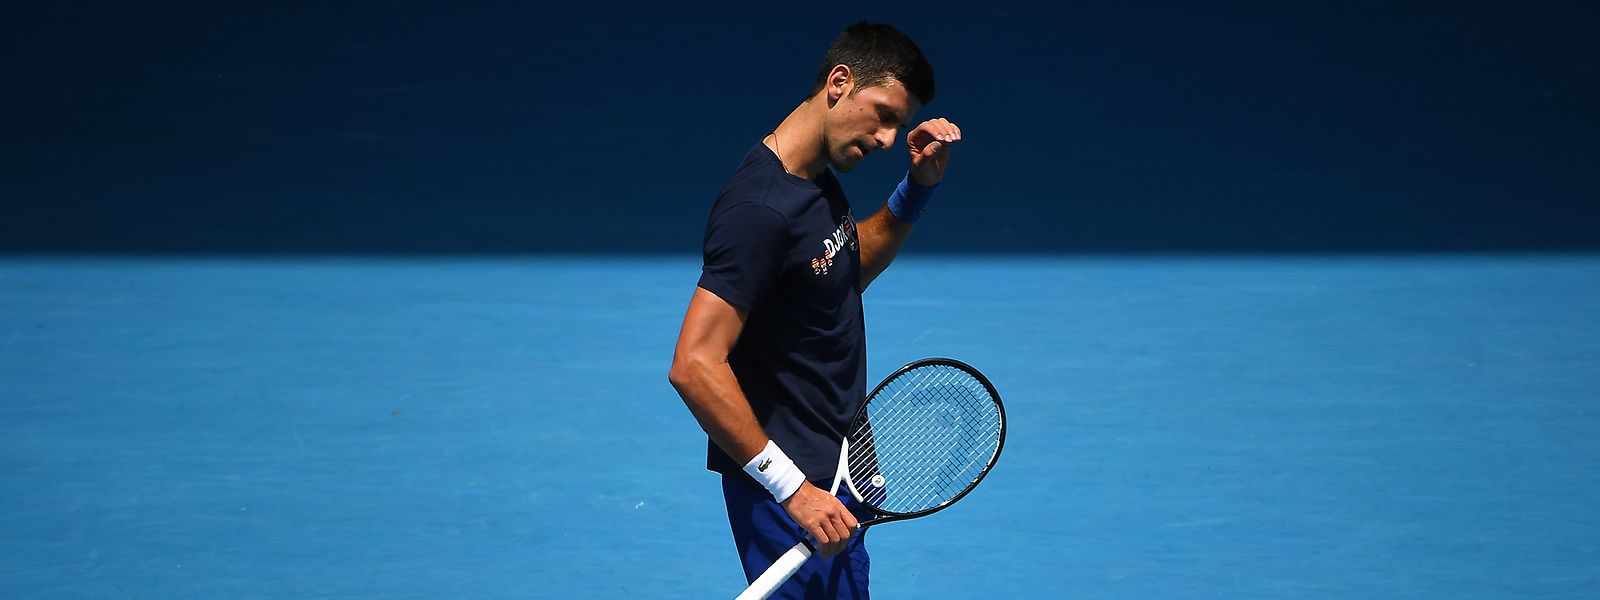 Trainieren darf er schon mal: Novak Djokovic auf einem Trainingsplatz der Australian Open. Ob er in Australien bleiben darf, ist dagegen fraglich.